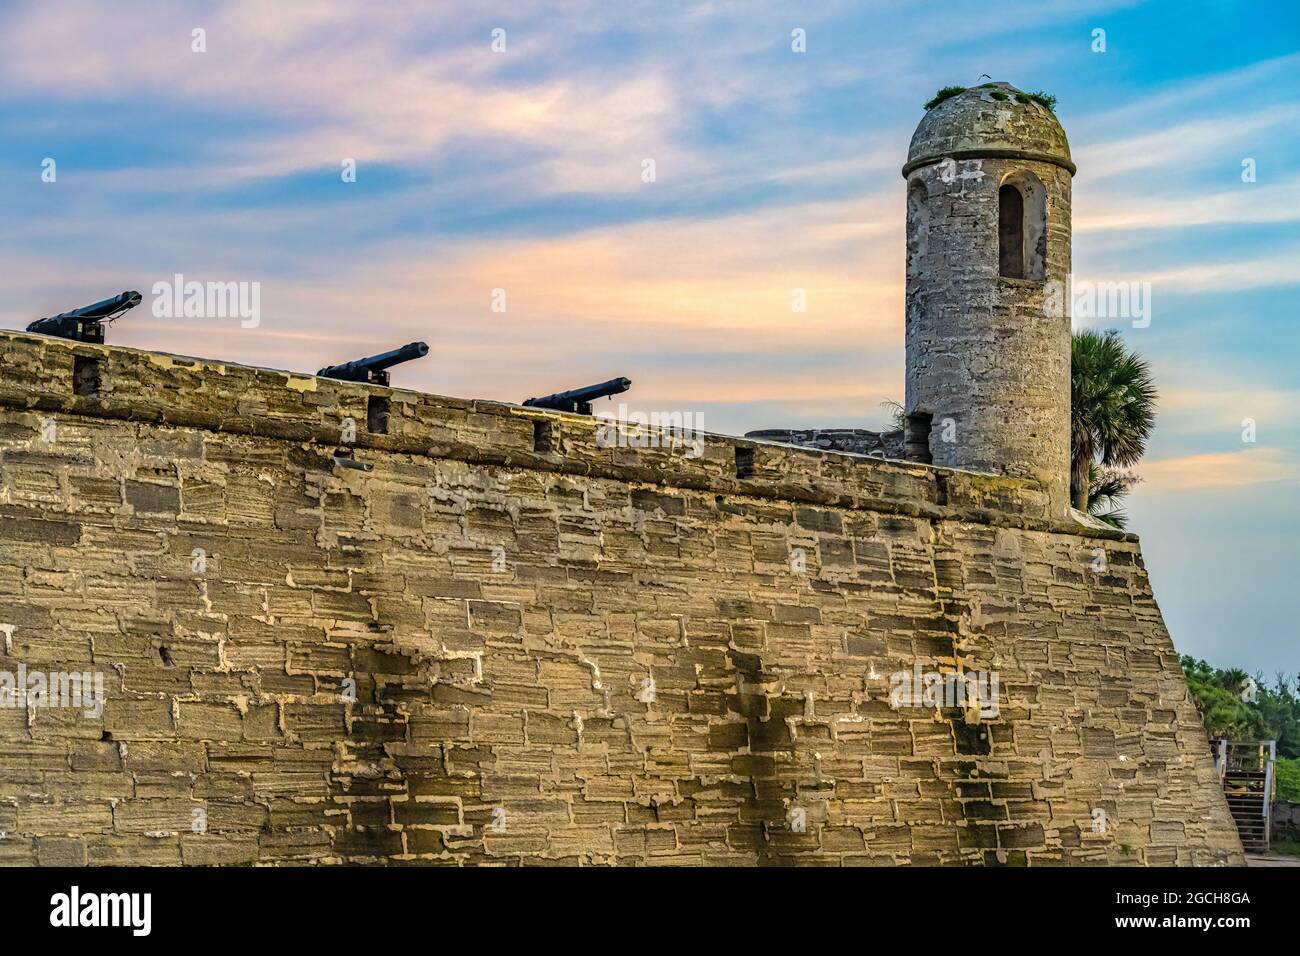 Castillo de San Marcos, fortezza in muratura della coquina del XVII secolo sulla Baia di Matanzas, all'alba a St. Augustine, Florida. (STATI UNITI) Foto Stock